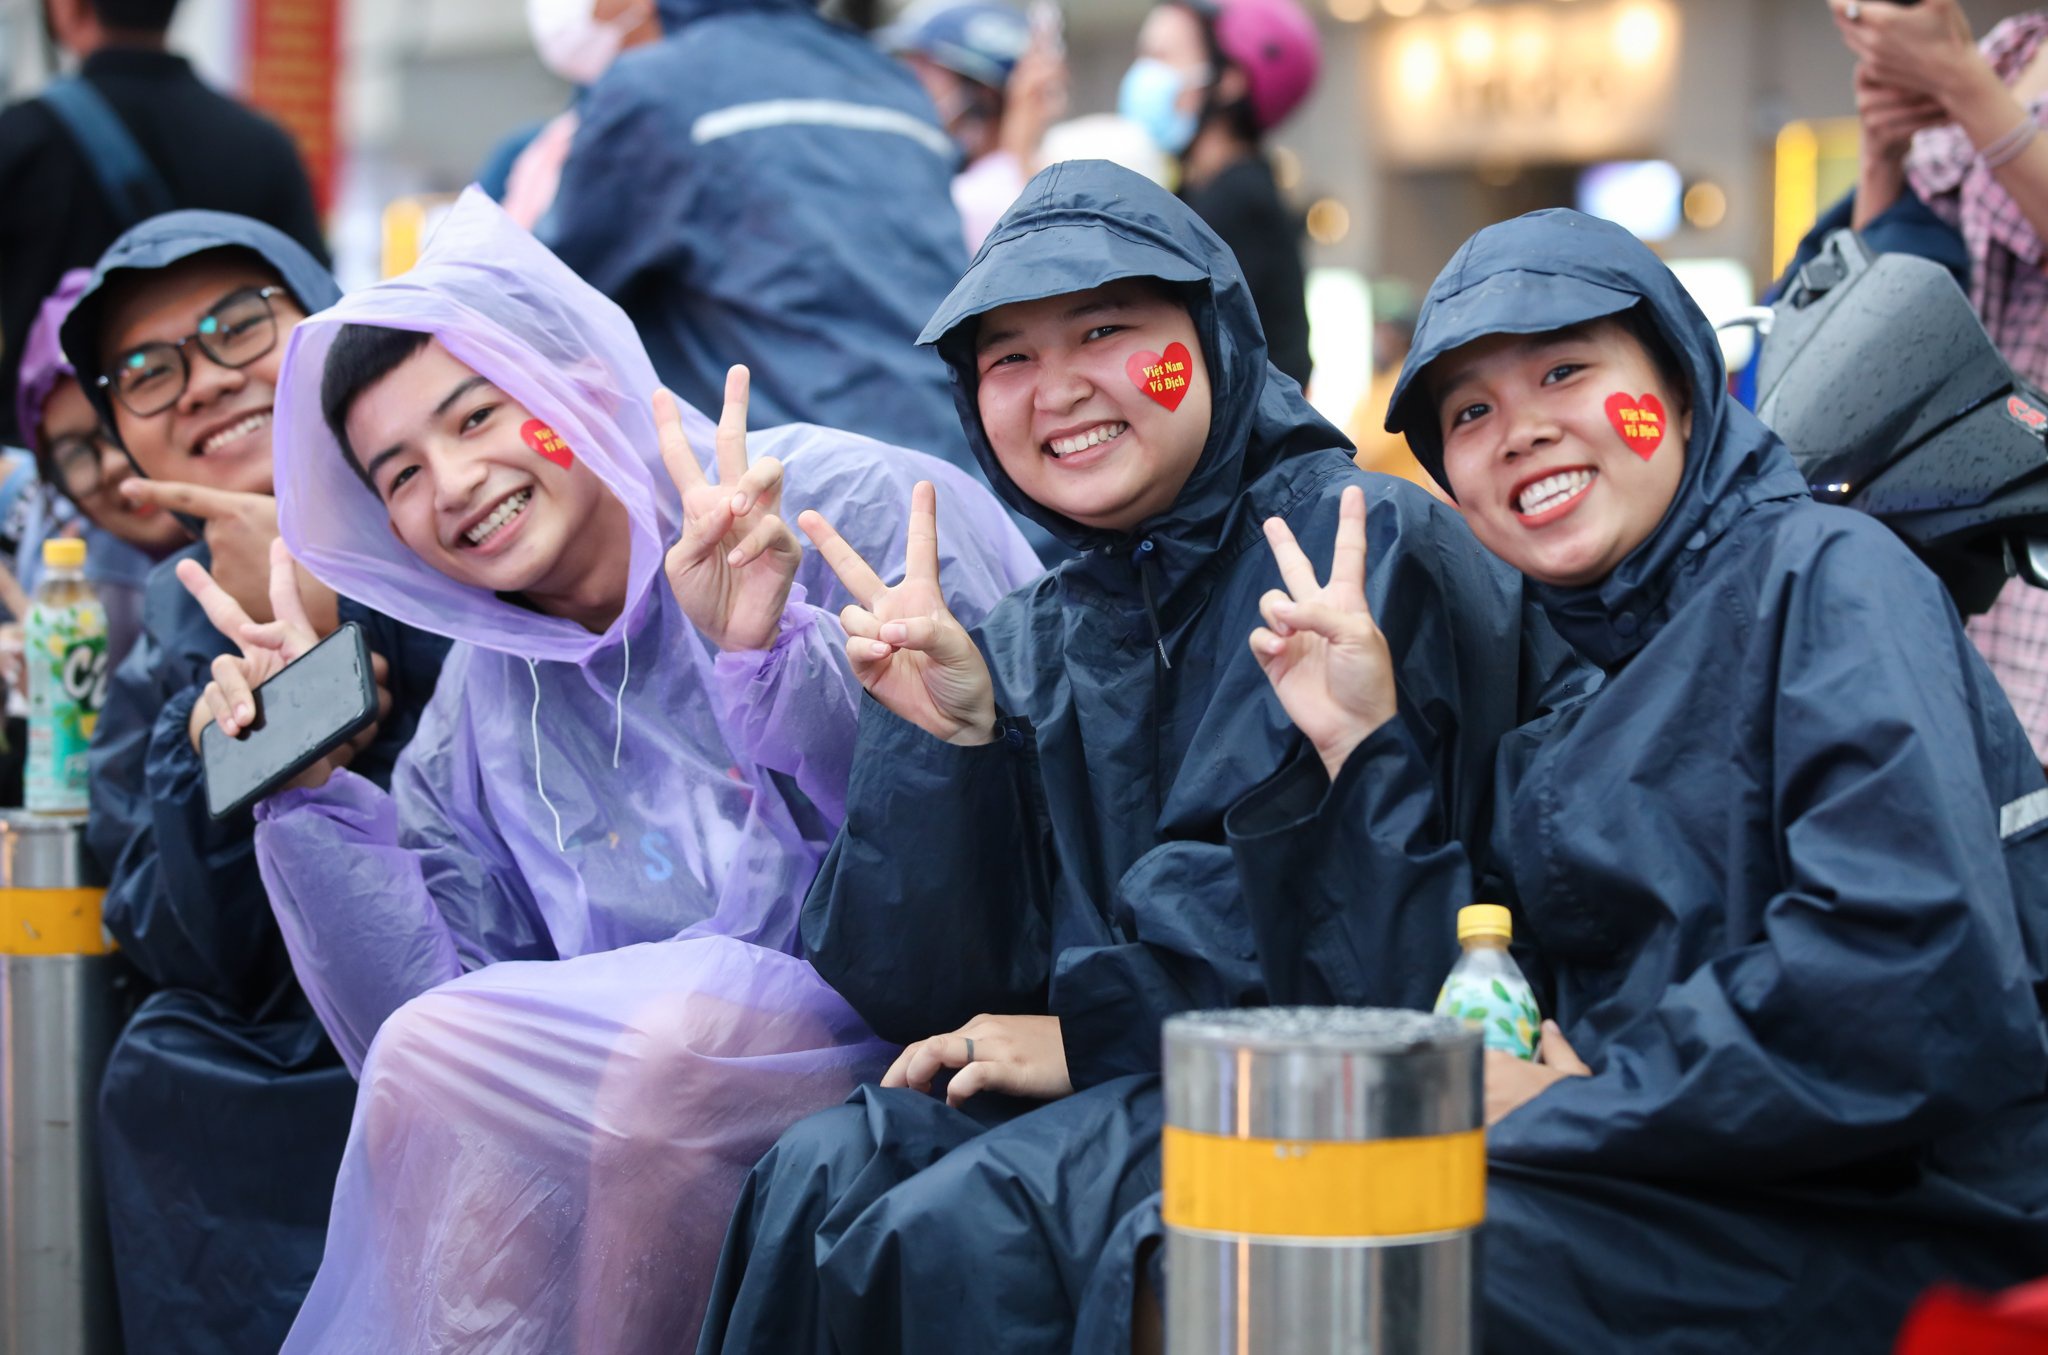 CĐV đội mưa đi cổ vũ đoàn quân của HLV Park Hang-seo đá trận chung kết. Ảnh: Phương Lâm.